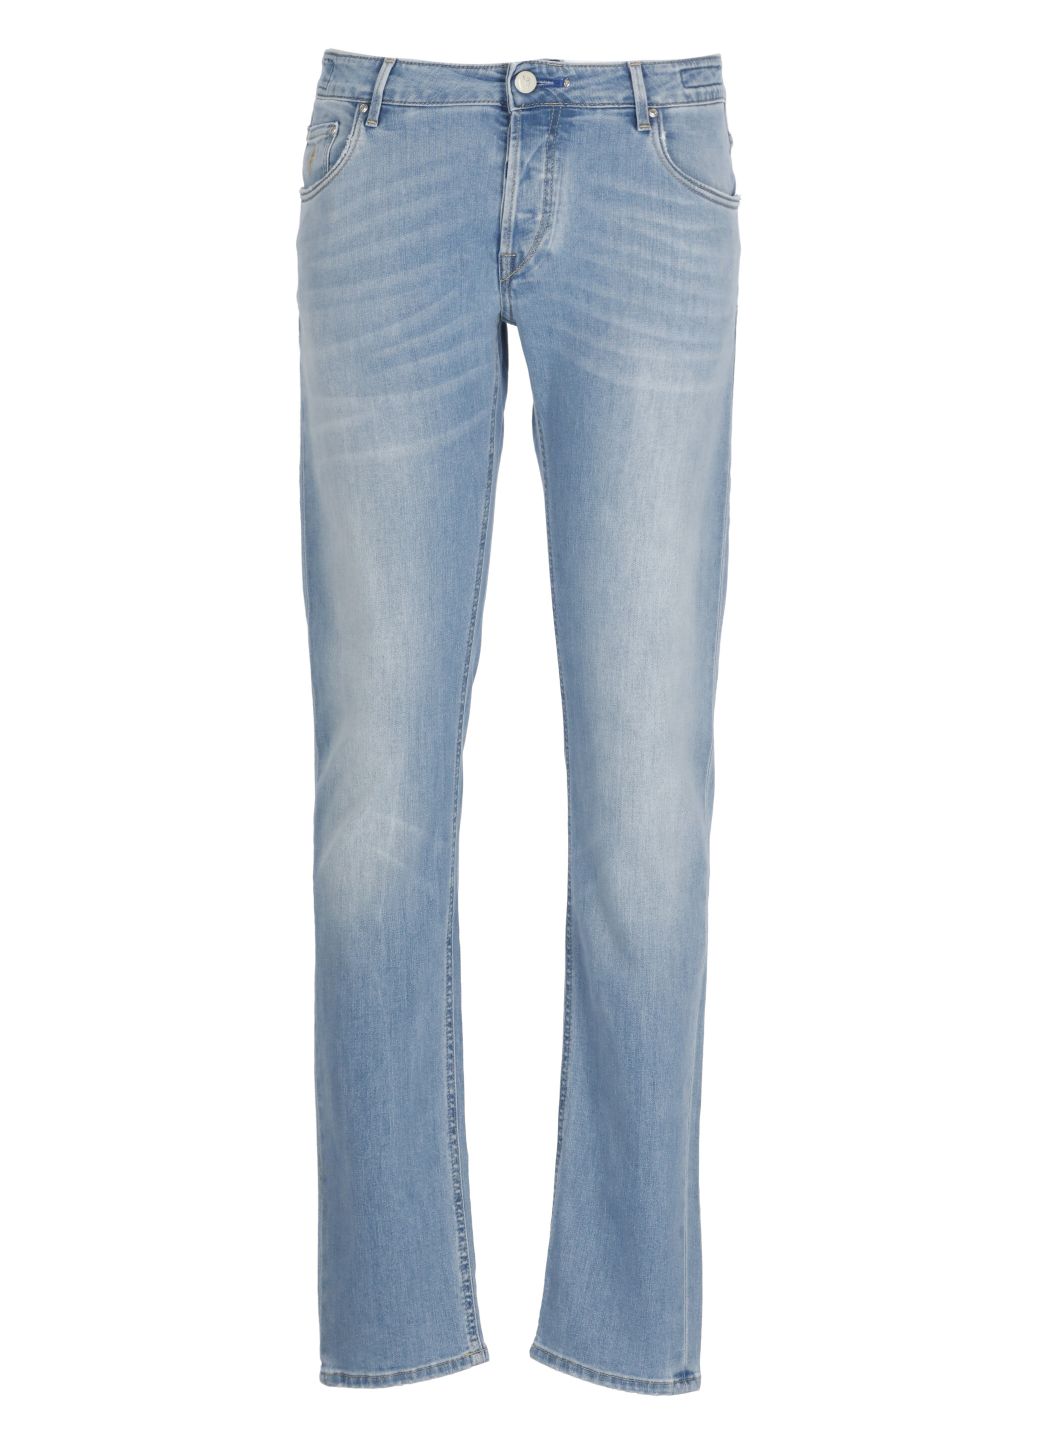 Jeans Orvieto in cotone